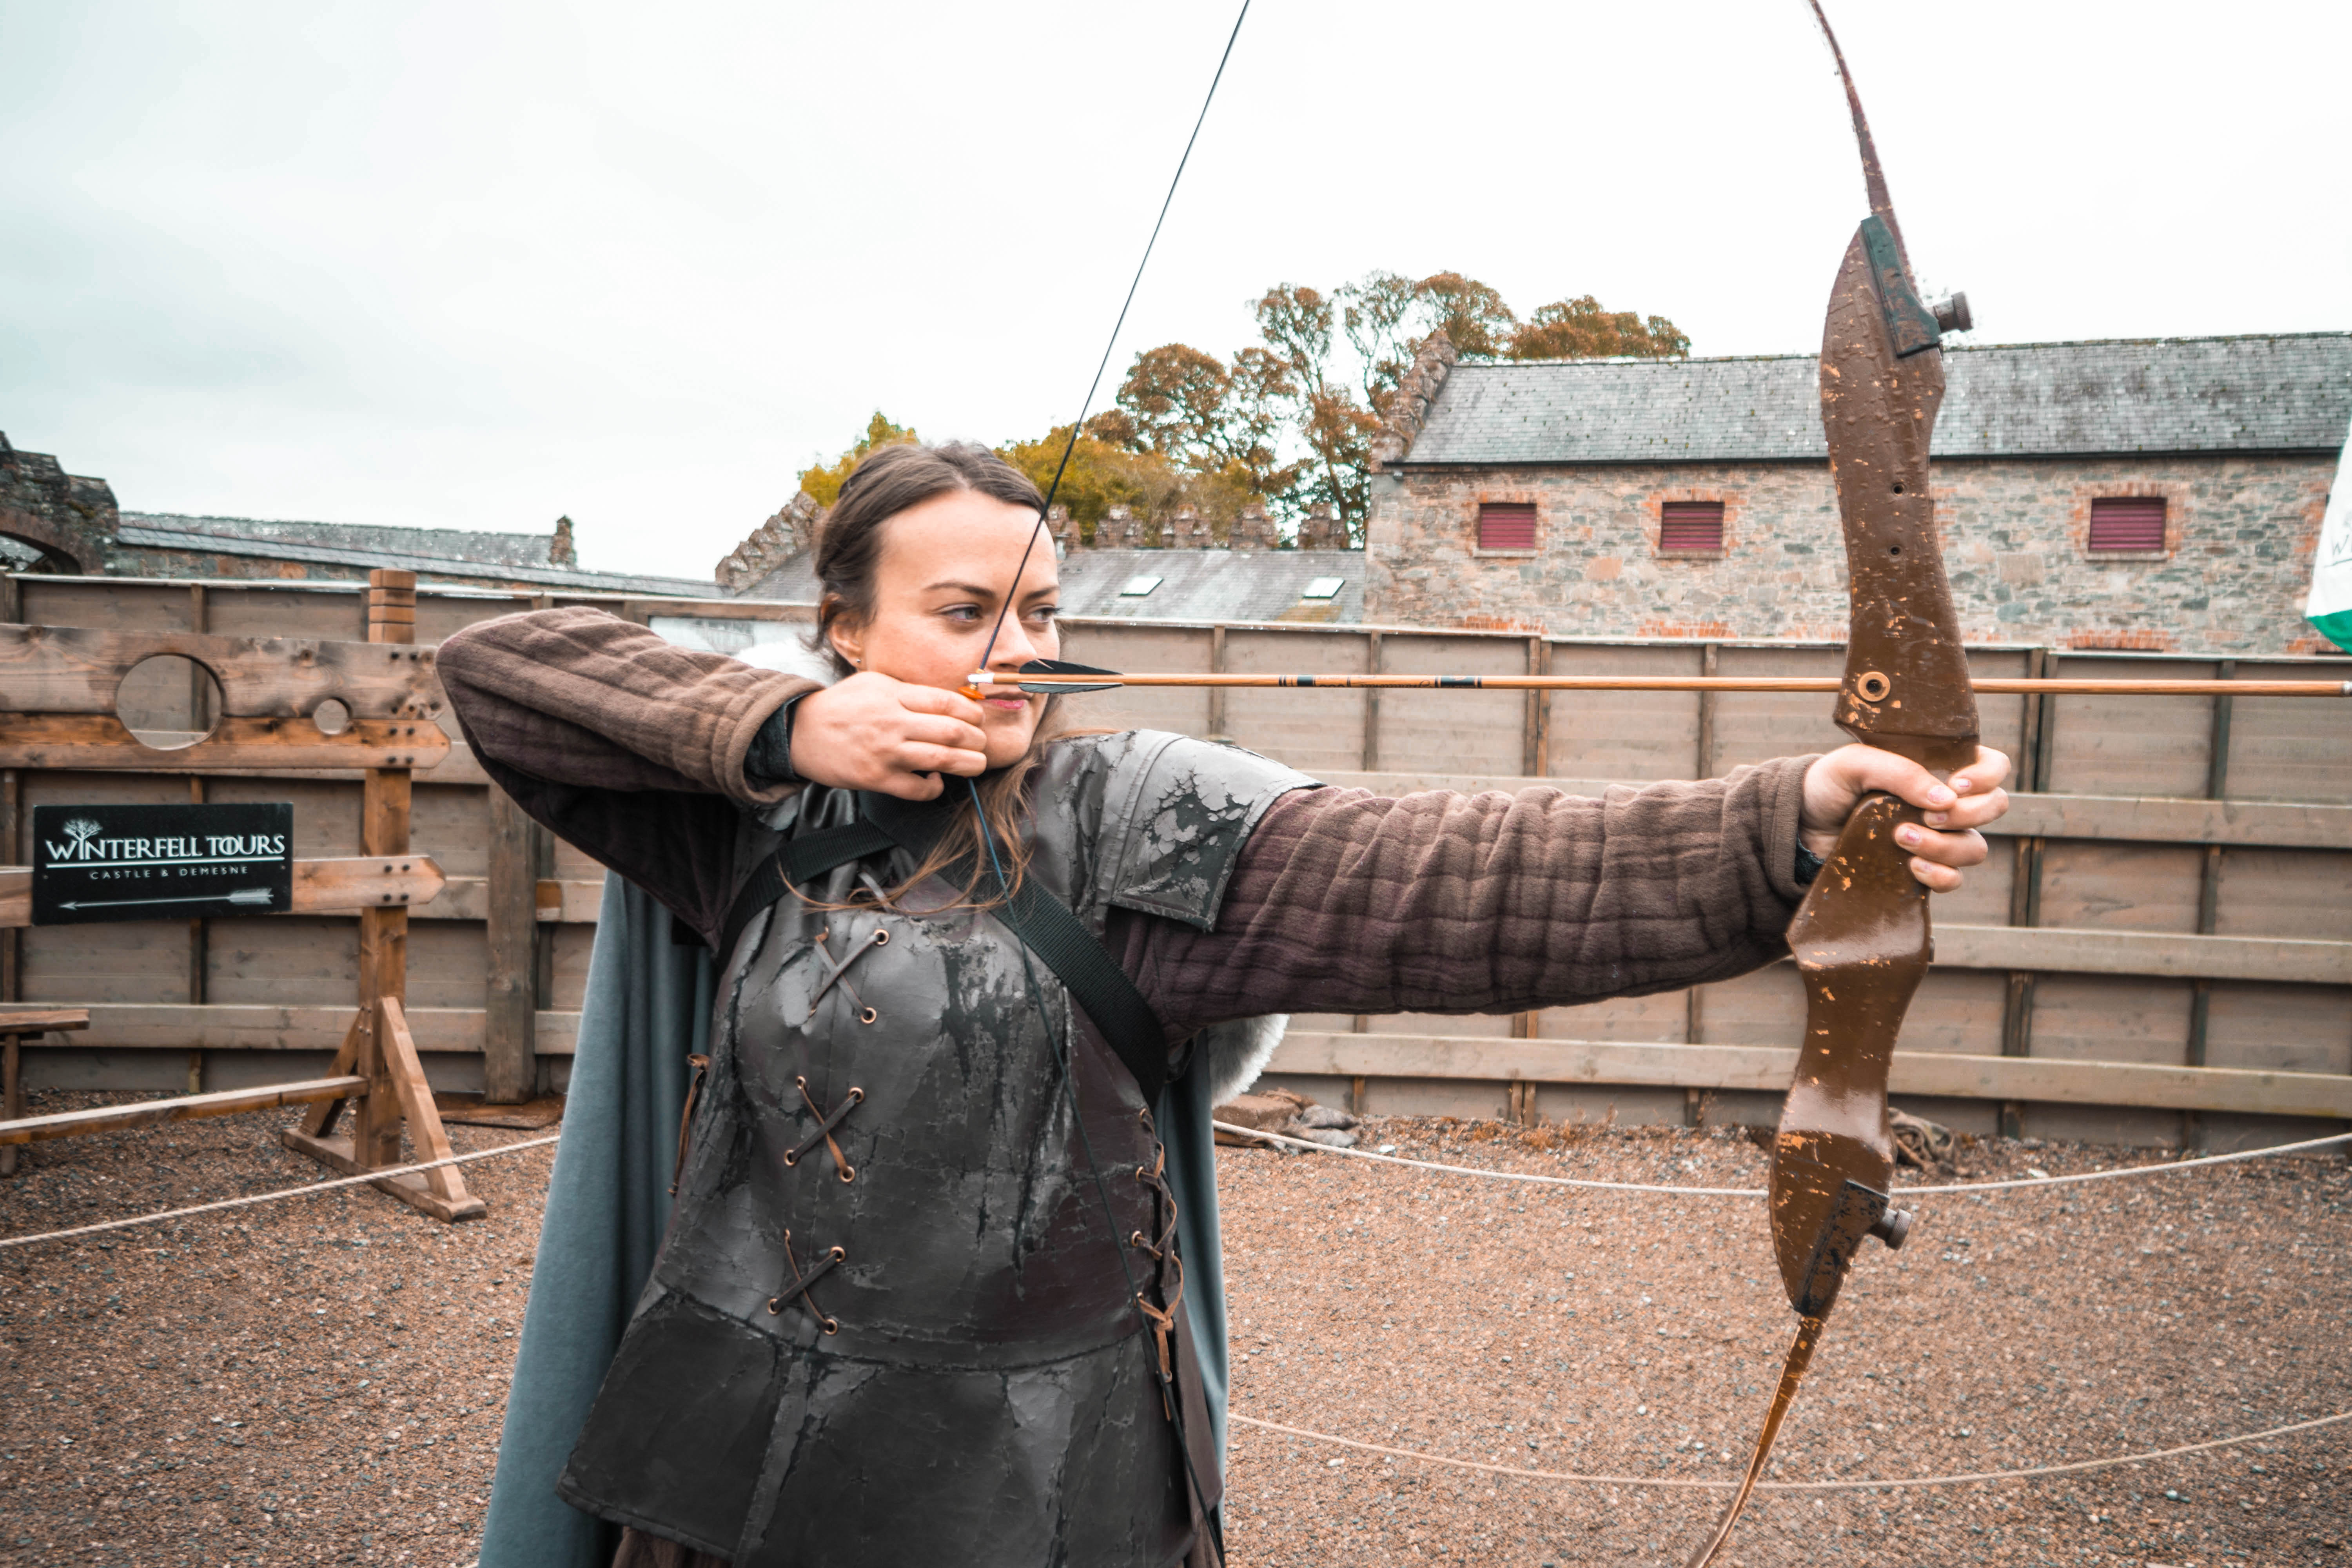 Learn archery at Winterfell Castle in Belfast!